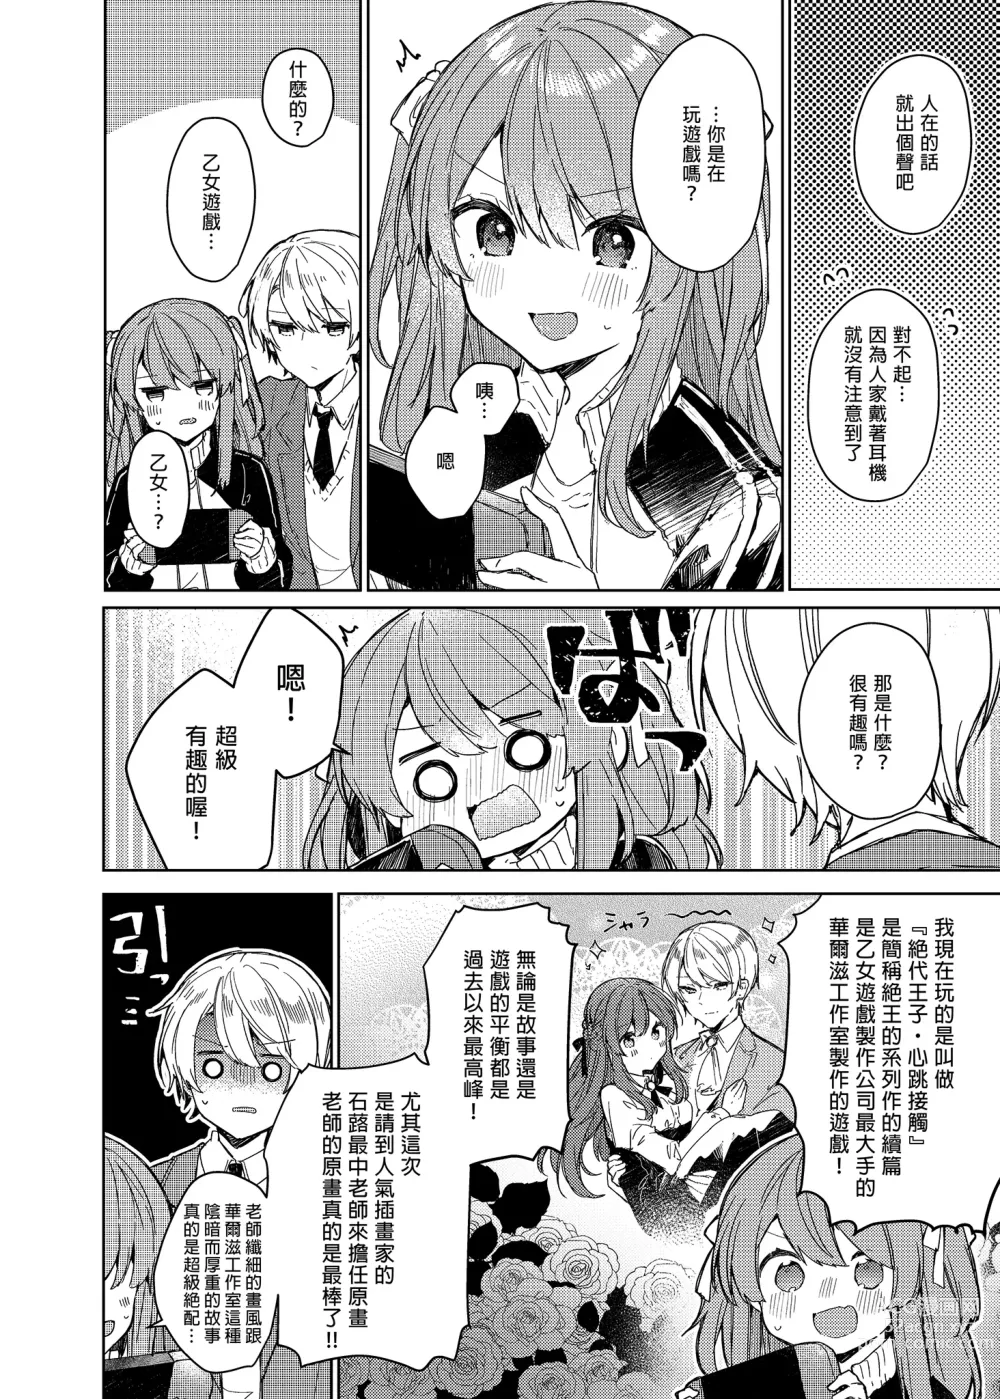 Page 34 of doujinshi 今天開始當個壞孩子。 (decensored)